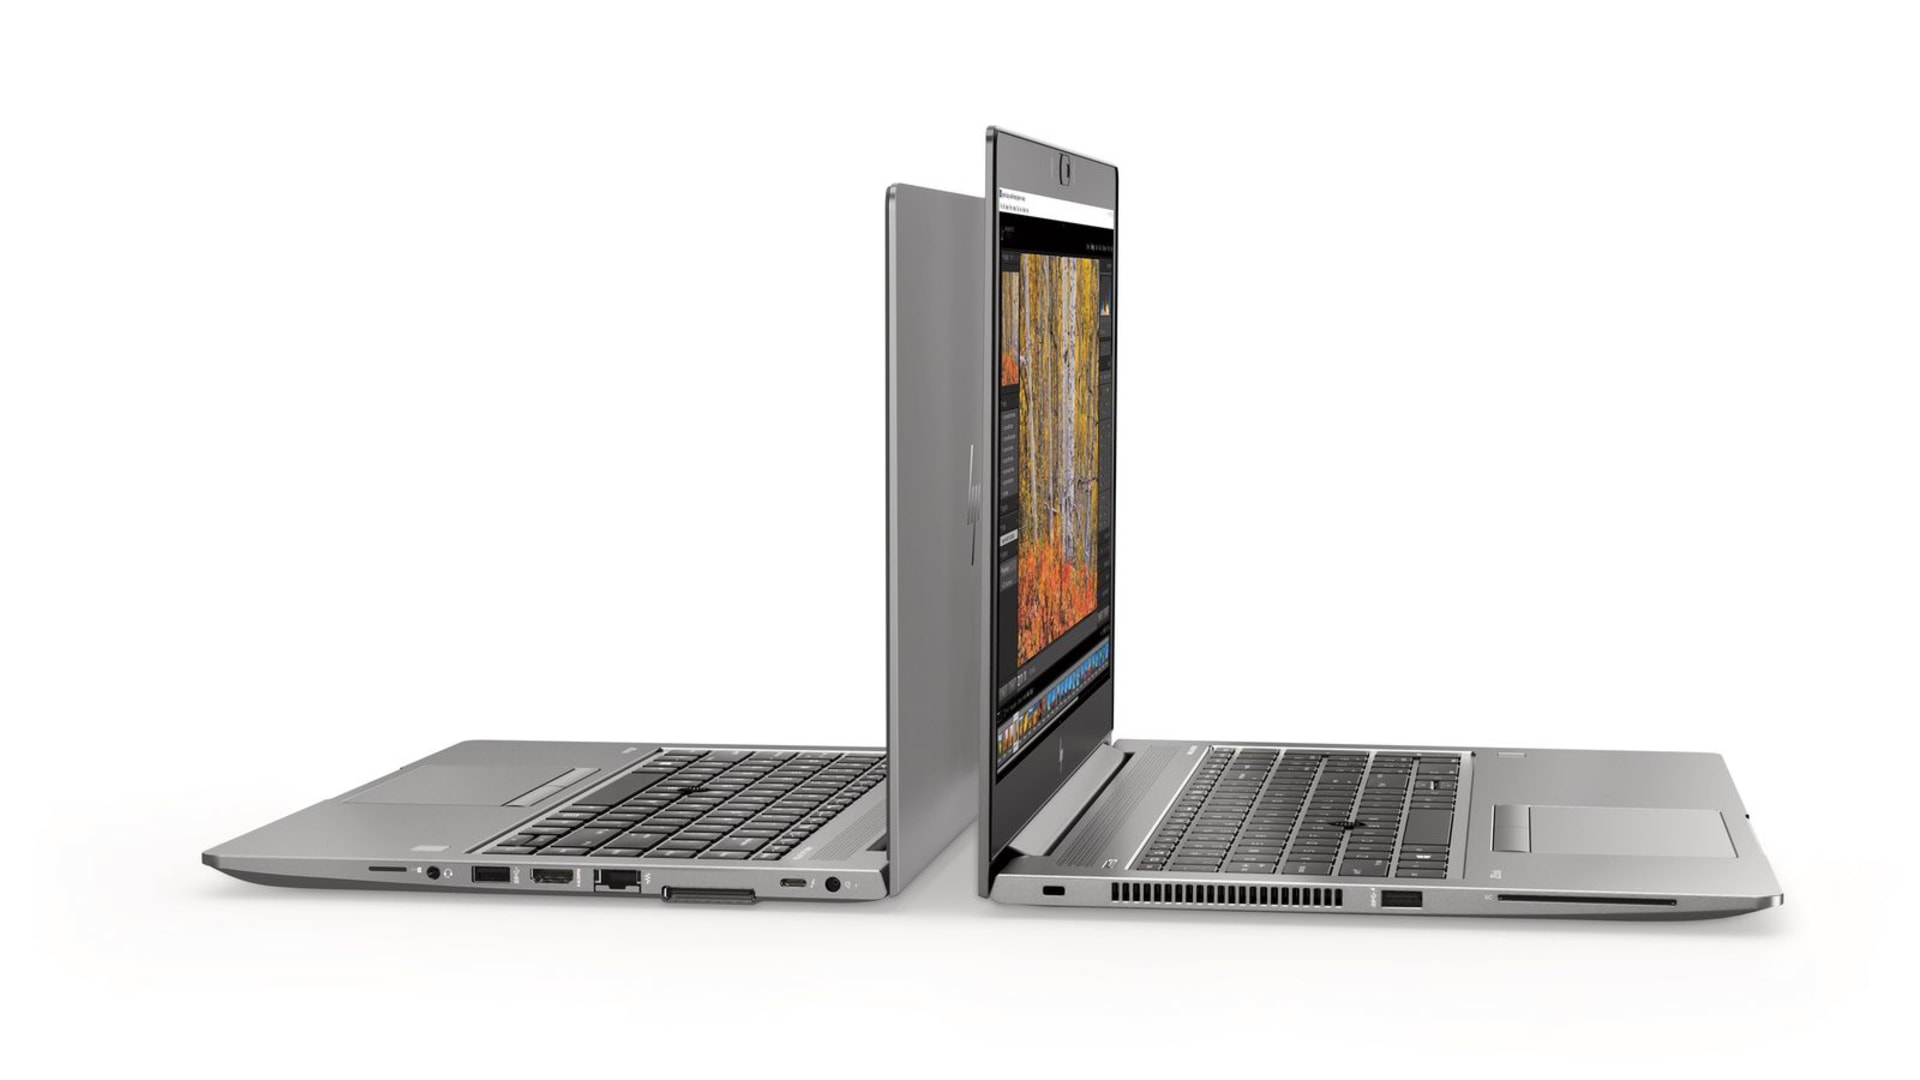 Nová řada HP Elite Book vybavená mechanickým překrytím webkamery